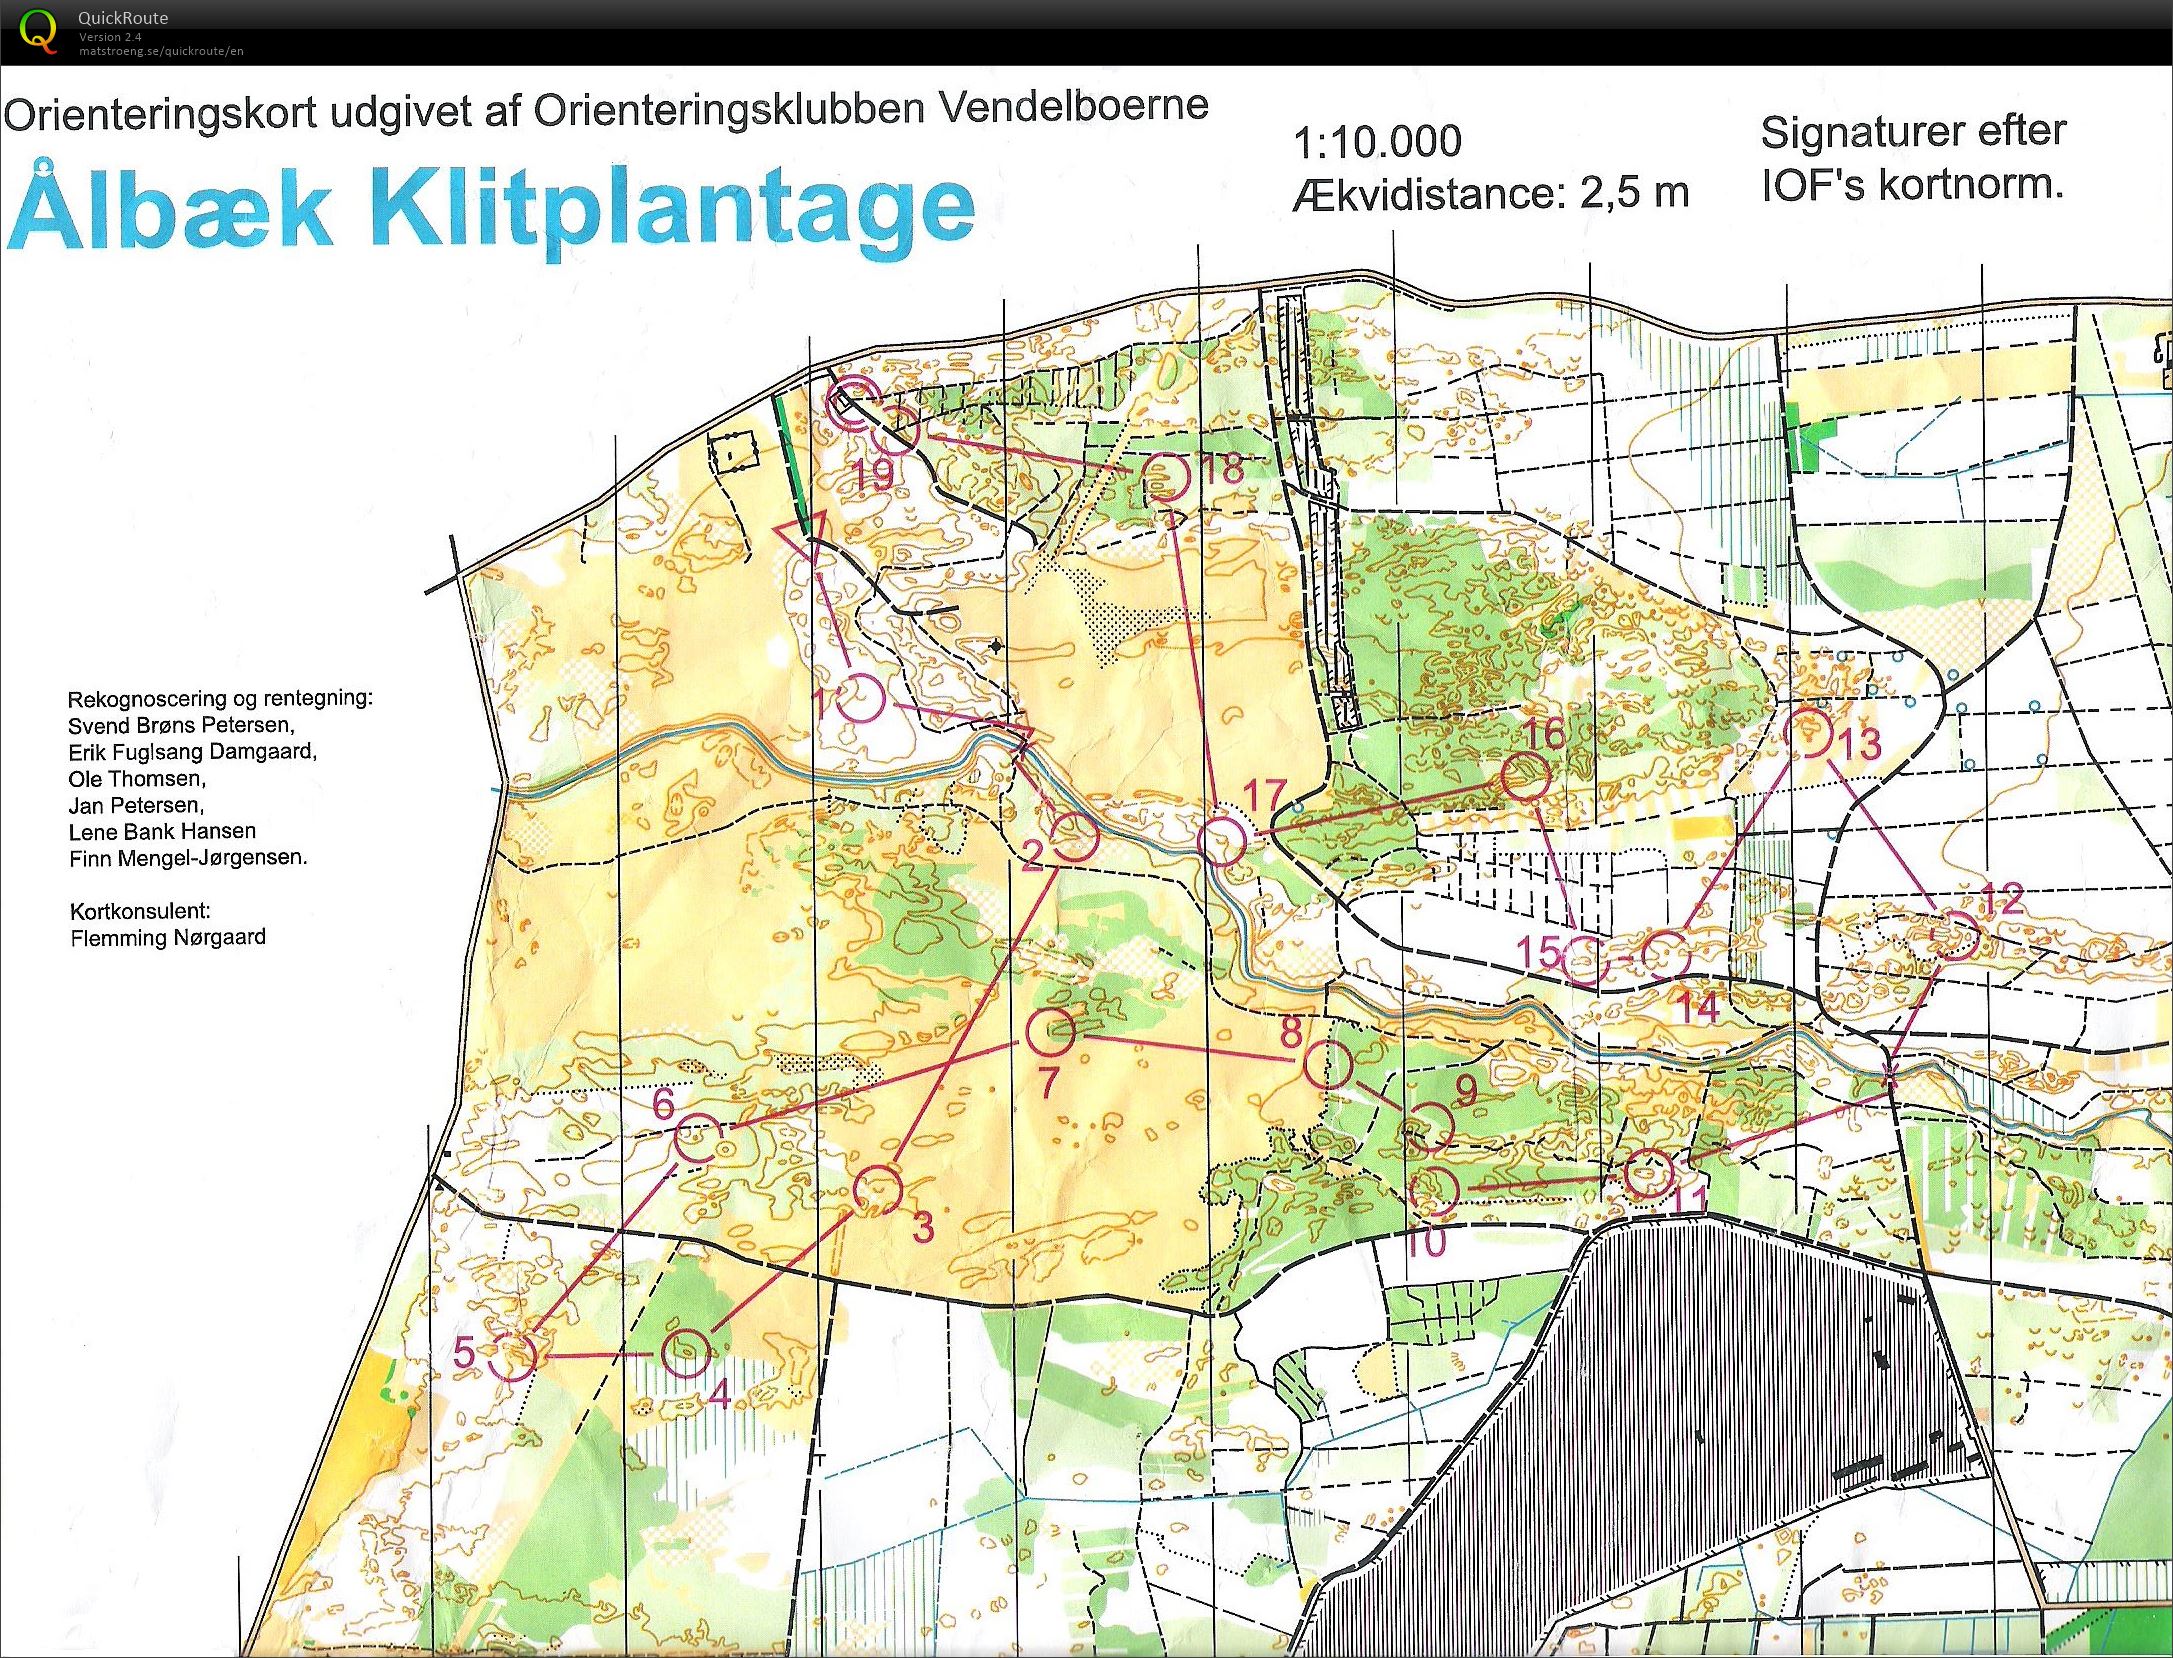 NJM Natløb Ålbæk Klitplantage - H45 - 6.2 km. (24/09/2014)